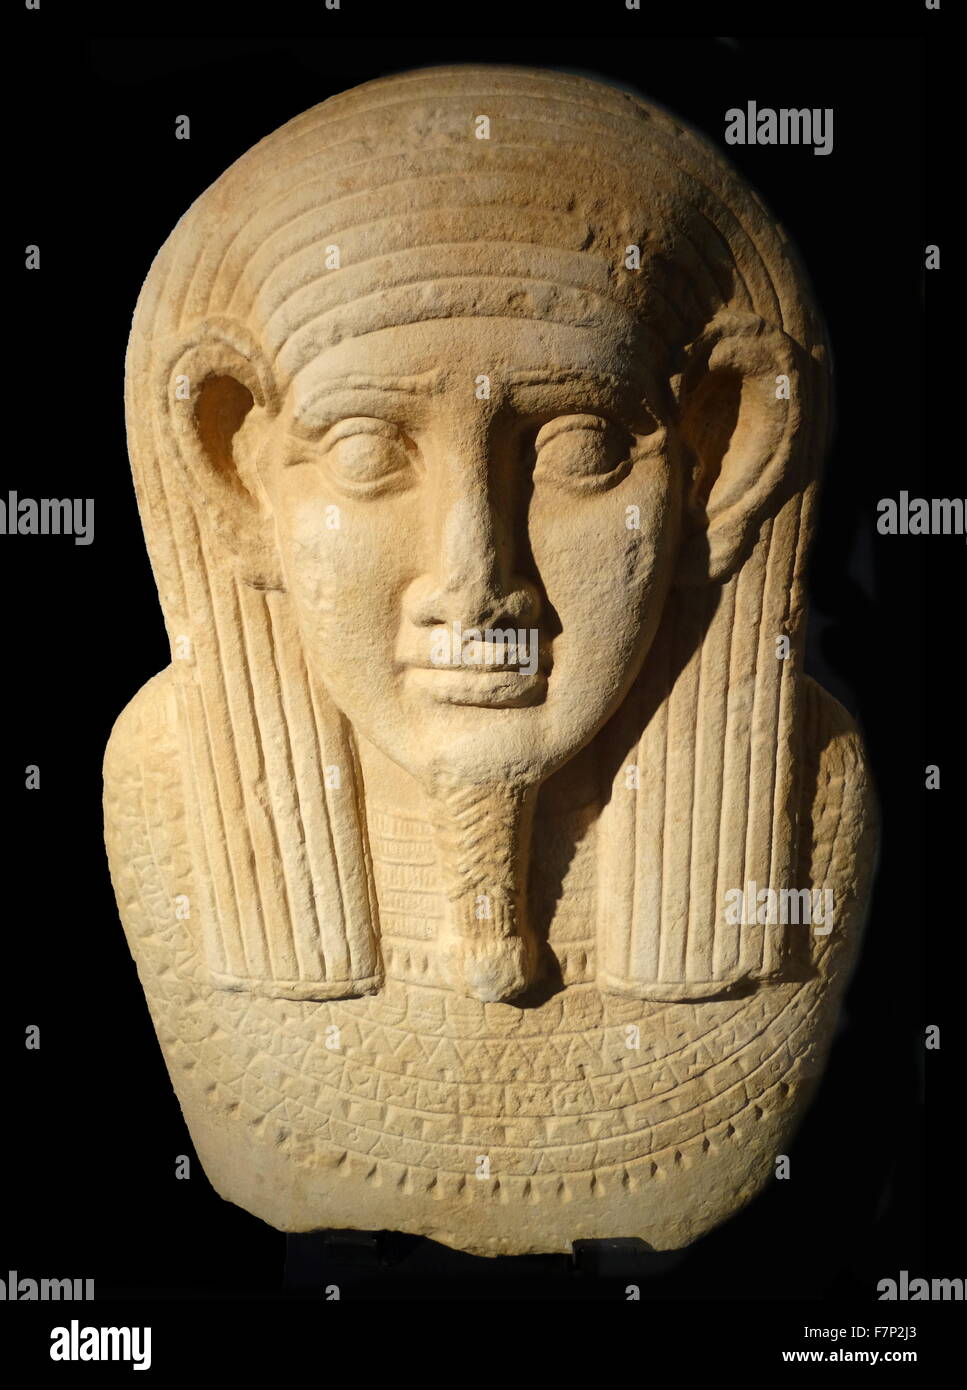 3.antica egiziana bara coperchio. Calcare. Periodo tolemaico (304-30 BC. Il sarcofago antropoide è stato ampiamente utilizzato dal nuovo regno alla fine della civiltà pharonic. Foto Stock